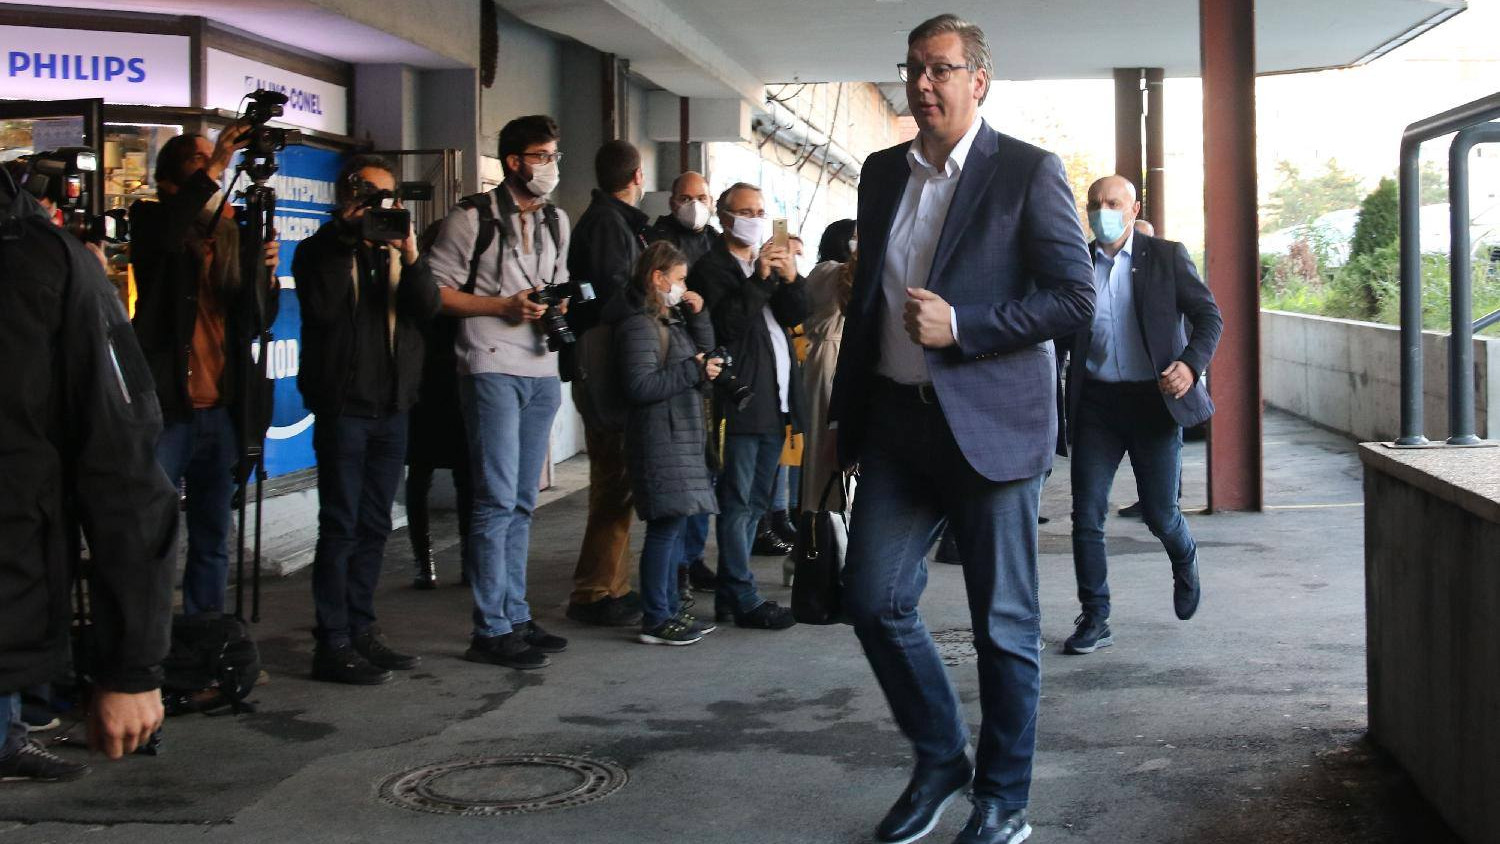 Ćulibrk: Vučiću smeta što nezavisni mediji ne kleče pred njim 1